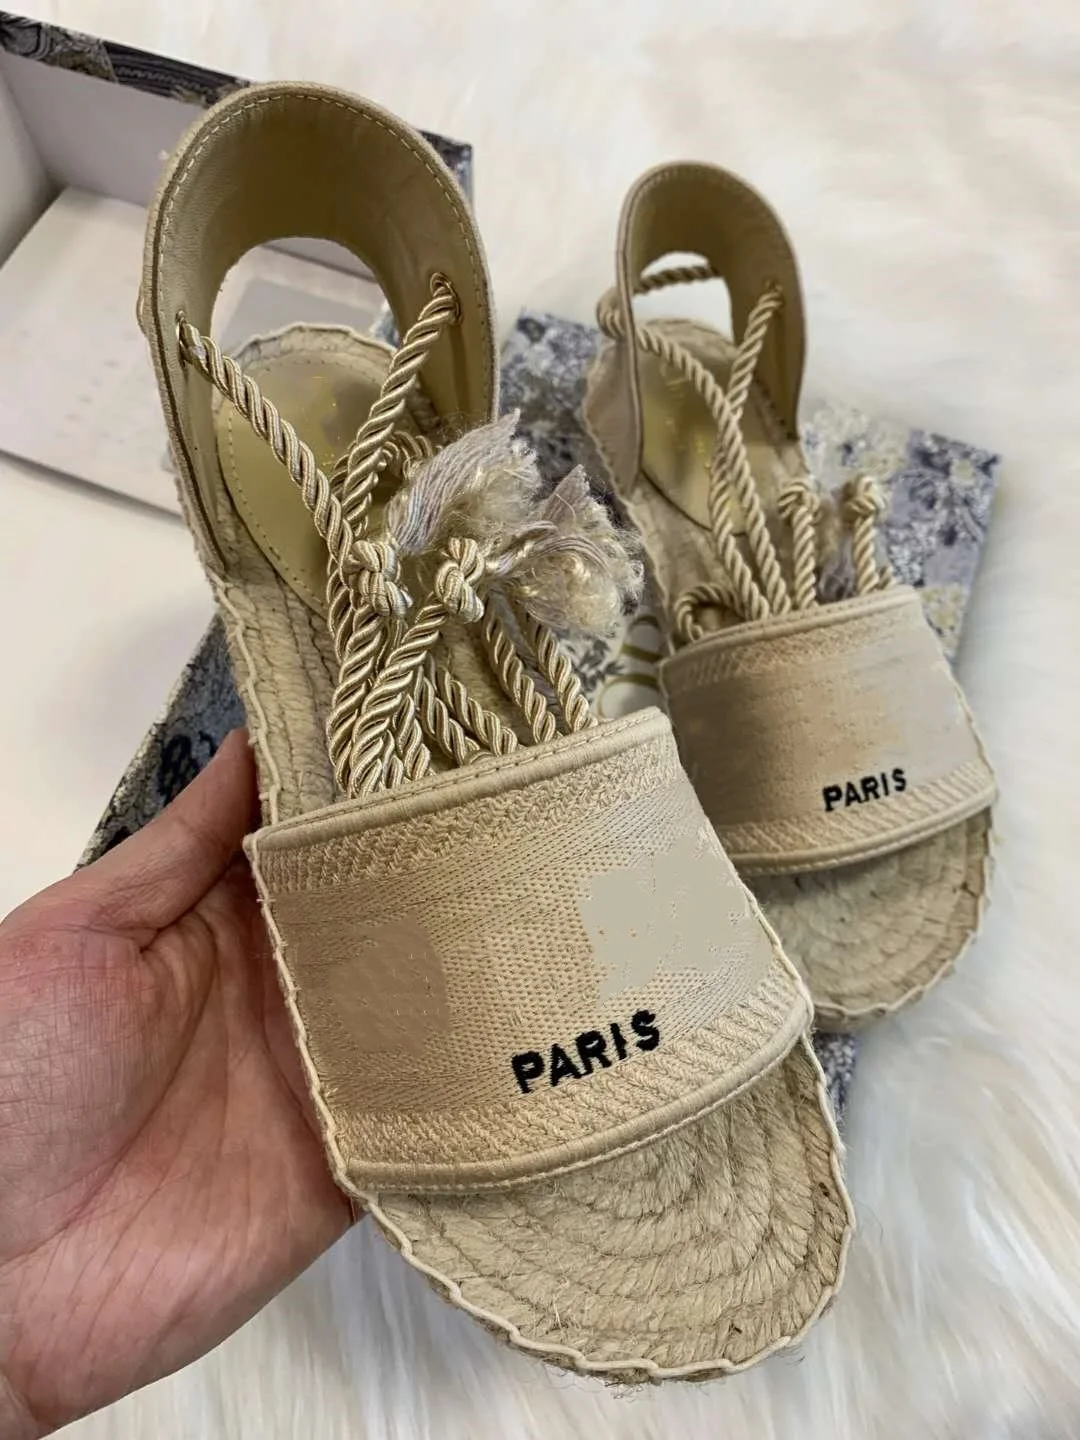 2020 Lastest Platform sandals women designer shoes , Fashion Wide Flat espadrille Summer Outdoor Causal rope ankle strap Sandals enlarge